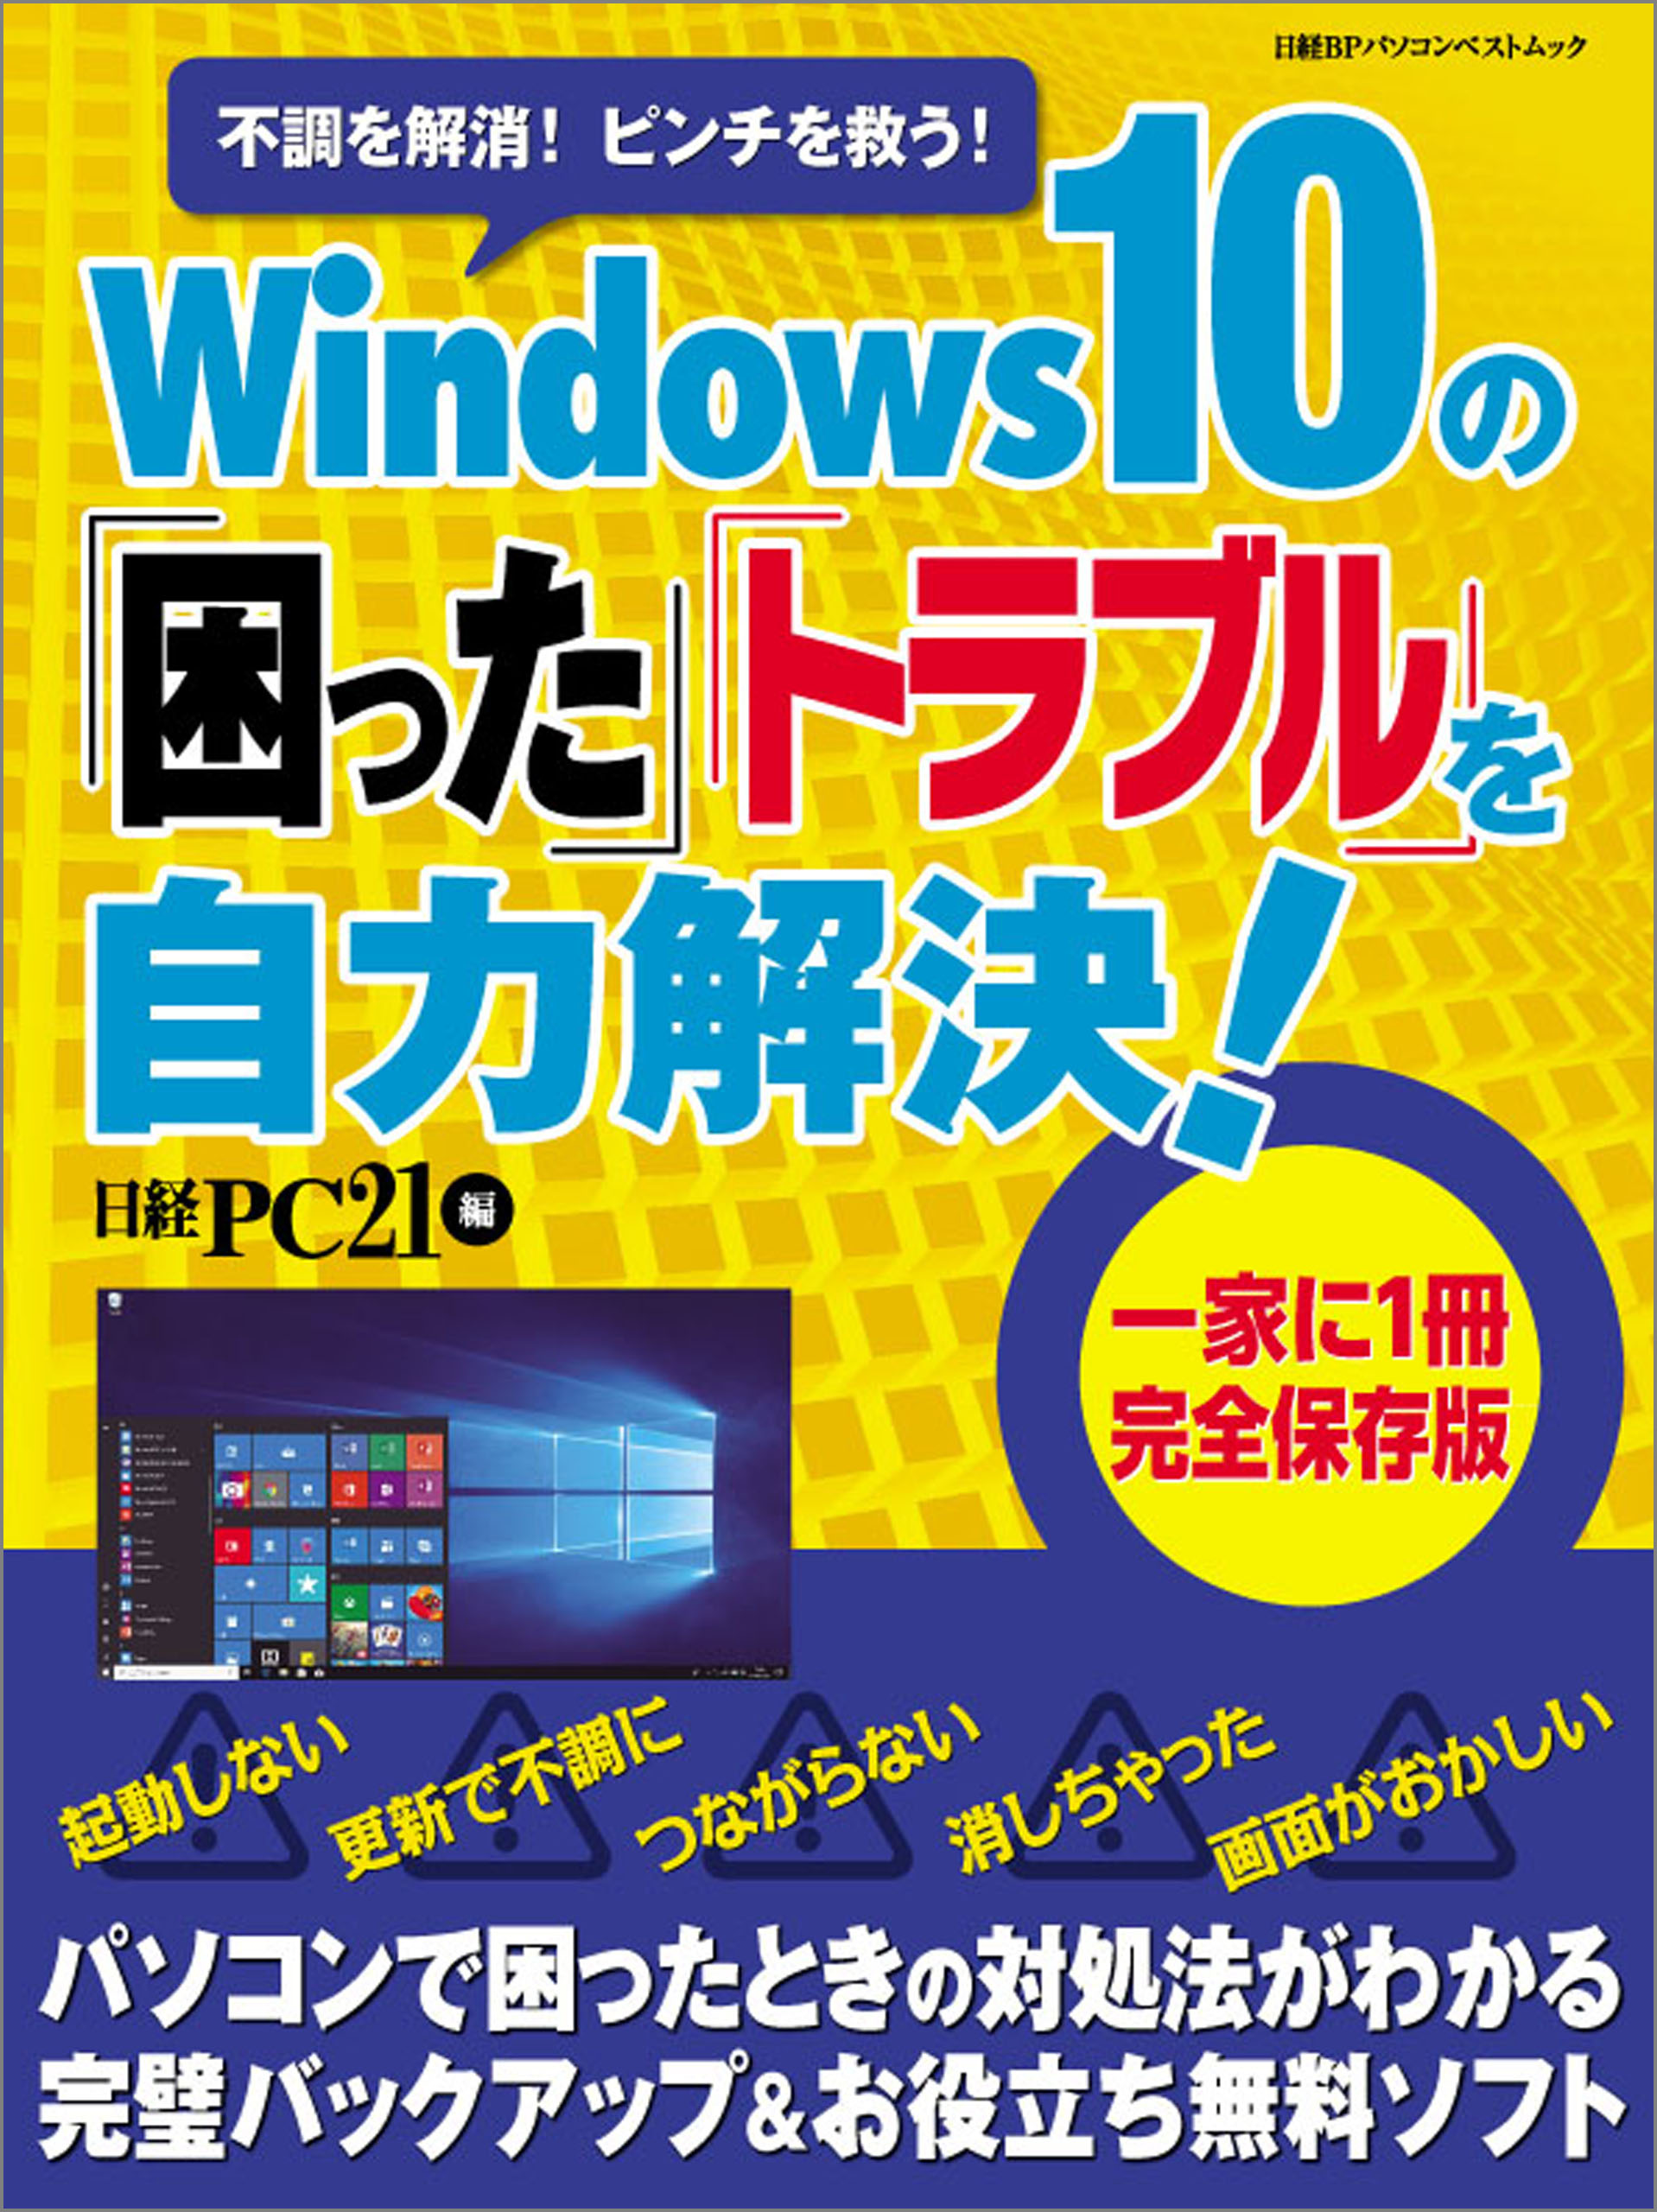 Windows10の「困った」「トラブル」を自力解決！ - 日経PC21 - 漫画